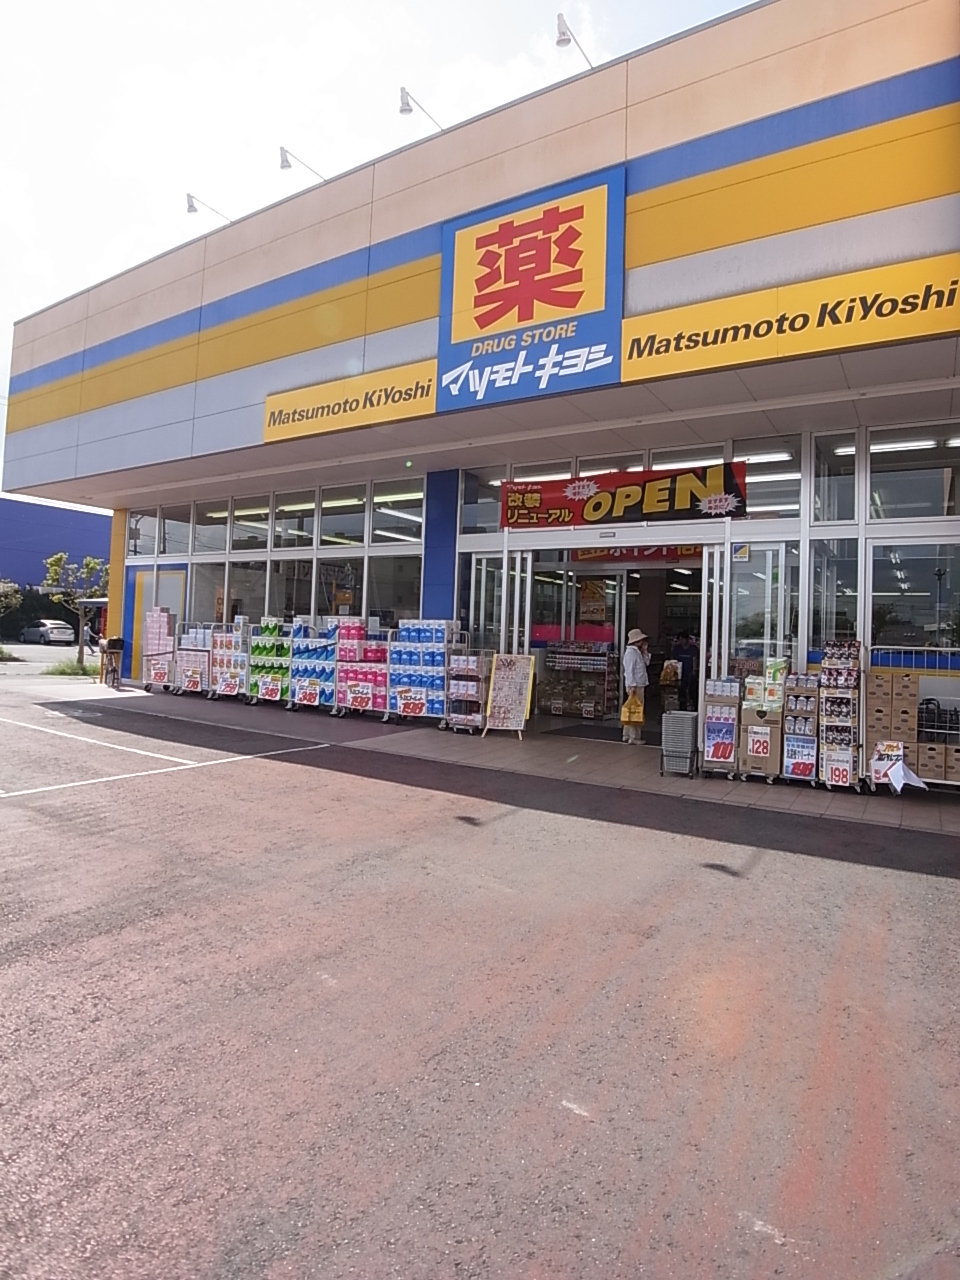 Dorakkusutoa. Matsumotokiyoshi drugstore handle Aoyagi shop 700m until (drugstore)